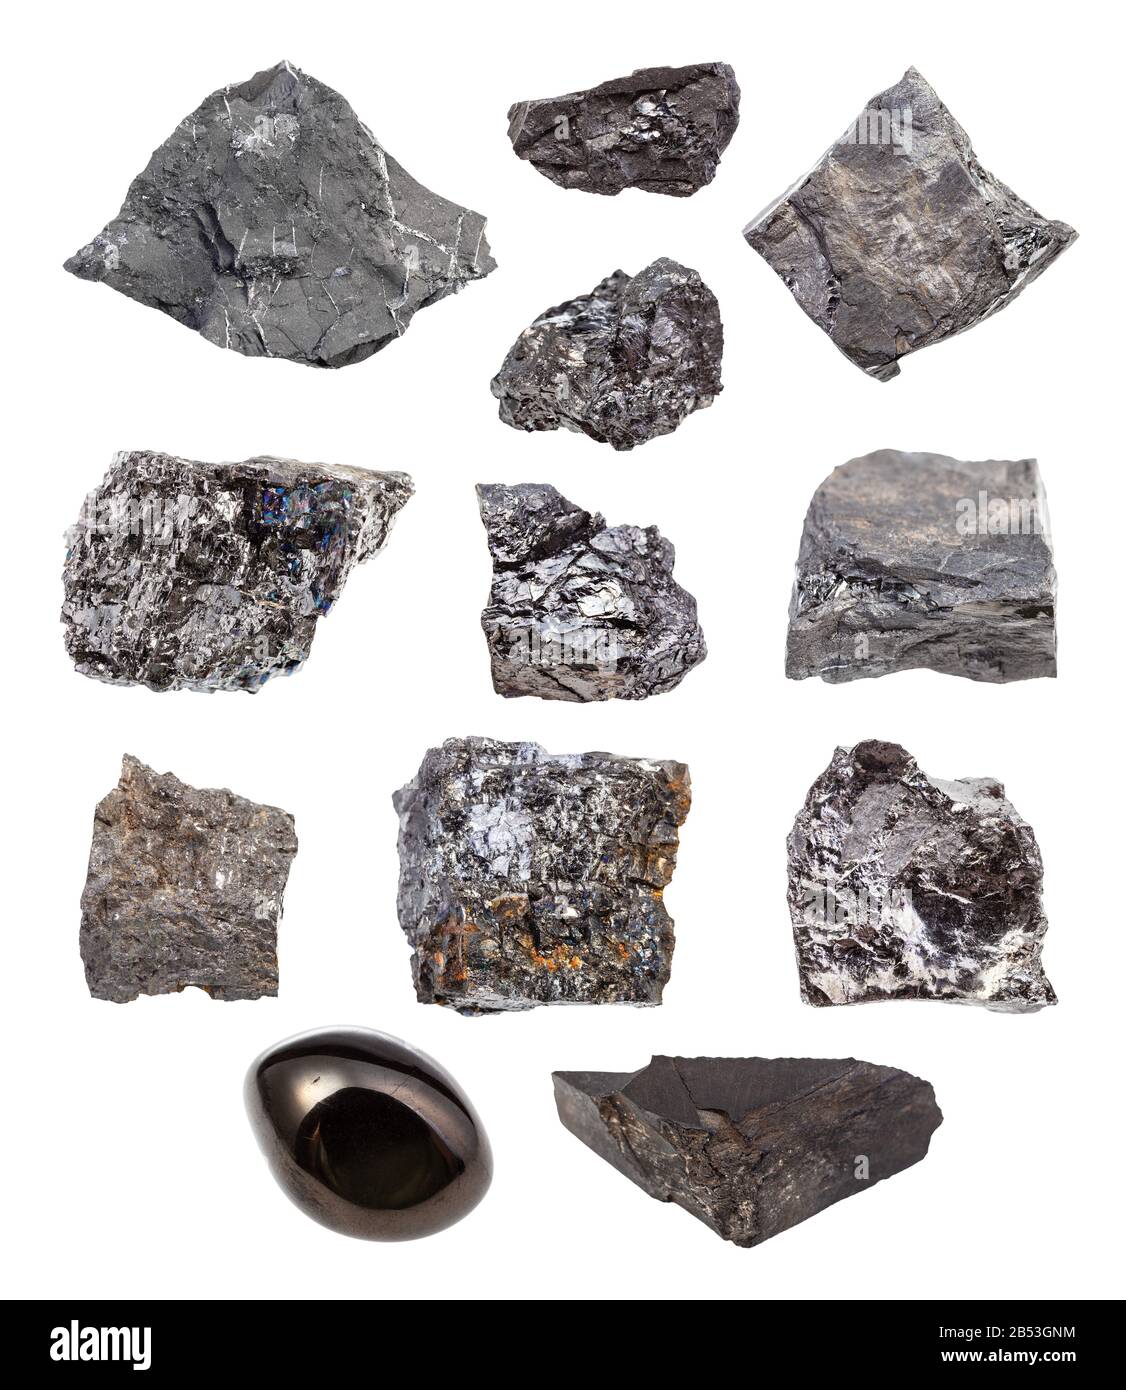 Anthracite, Lignite, bituminous coal